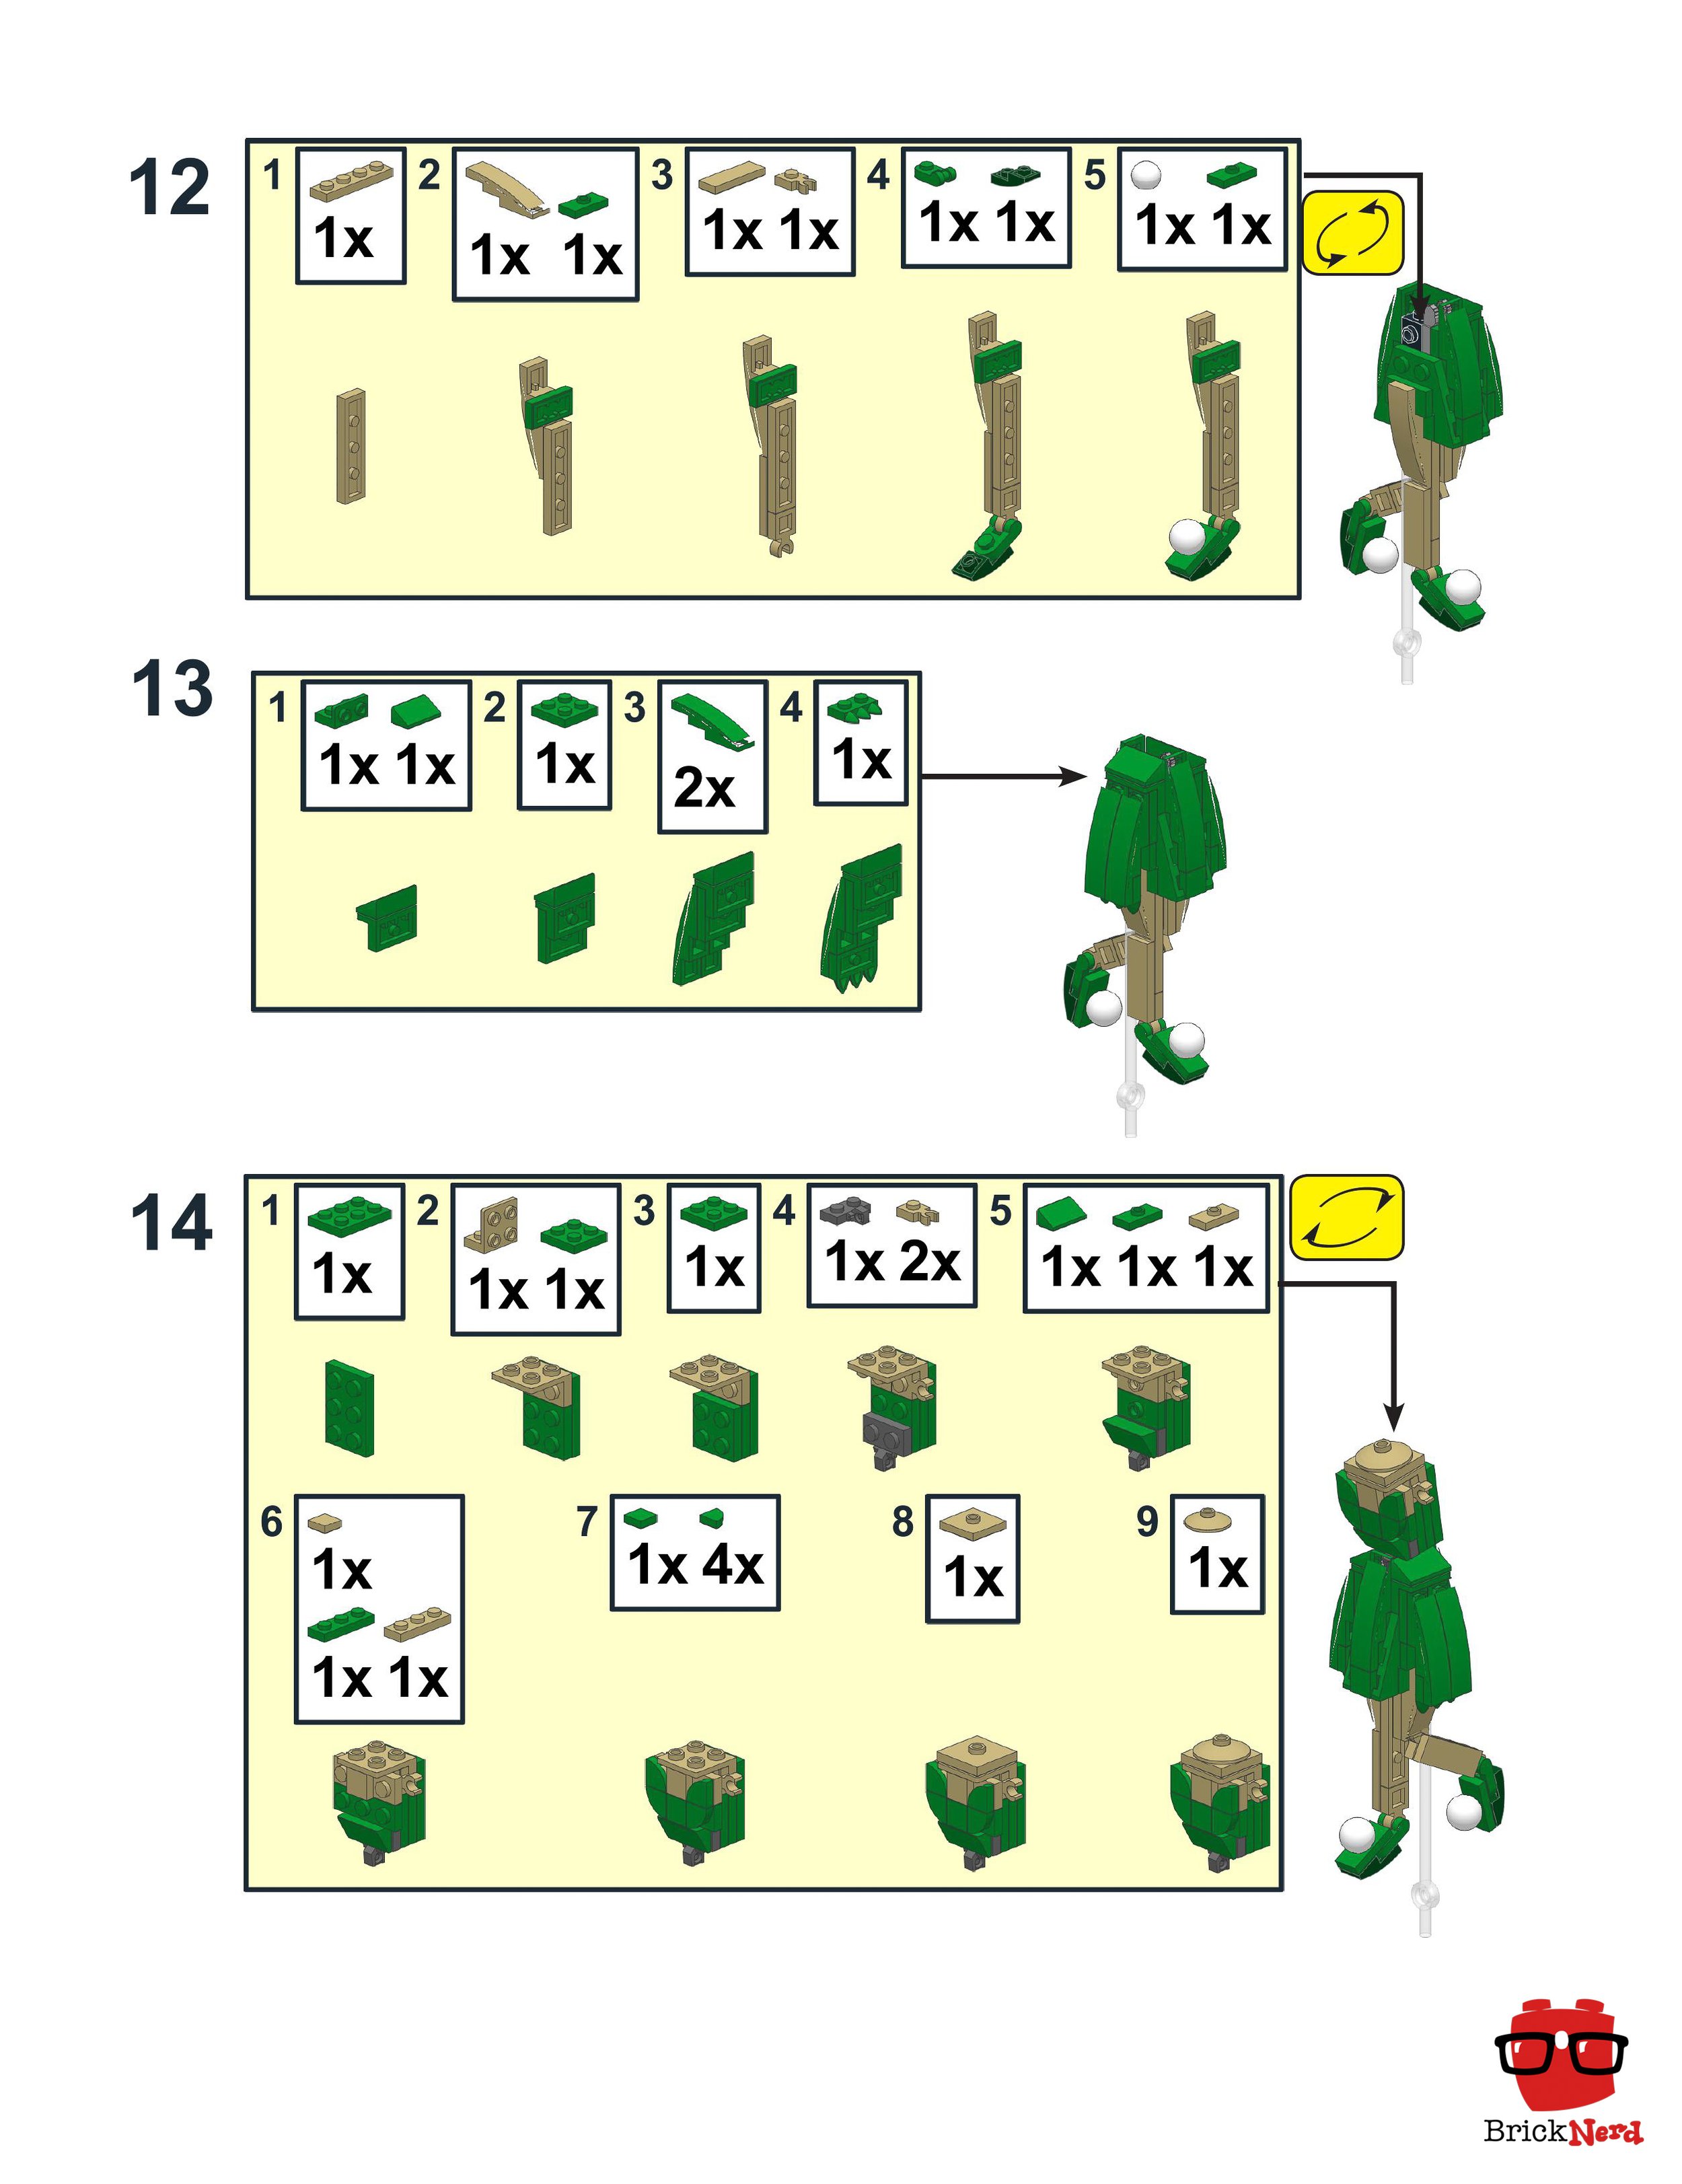 LEGO Tinkerbell Instructions 3 - BrickNerd.jpg